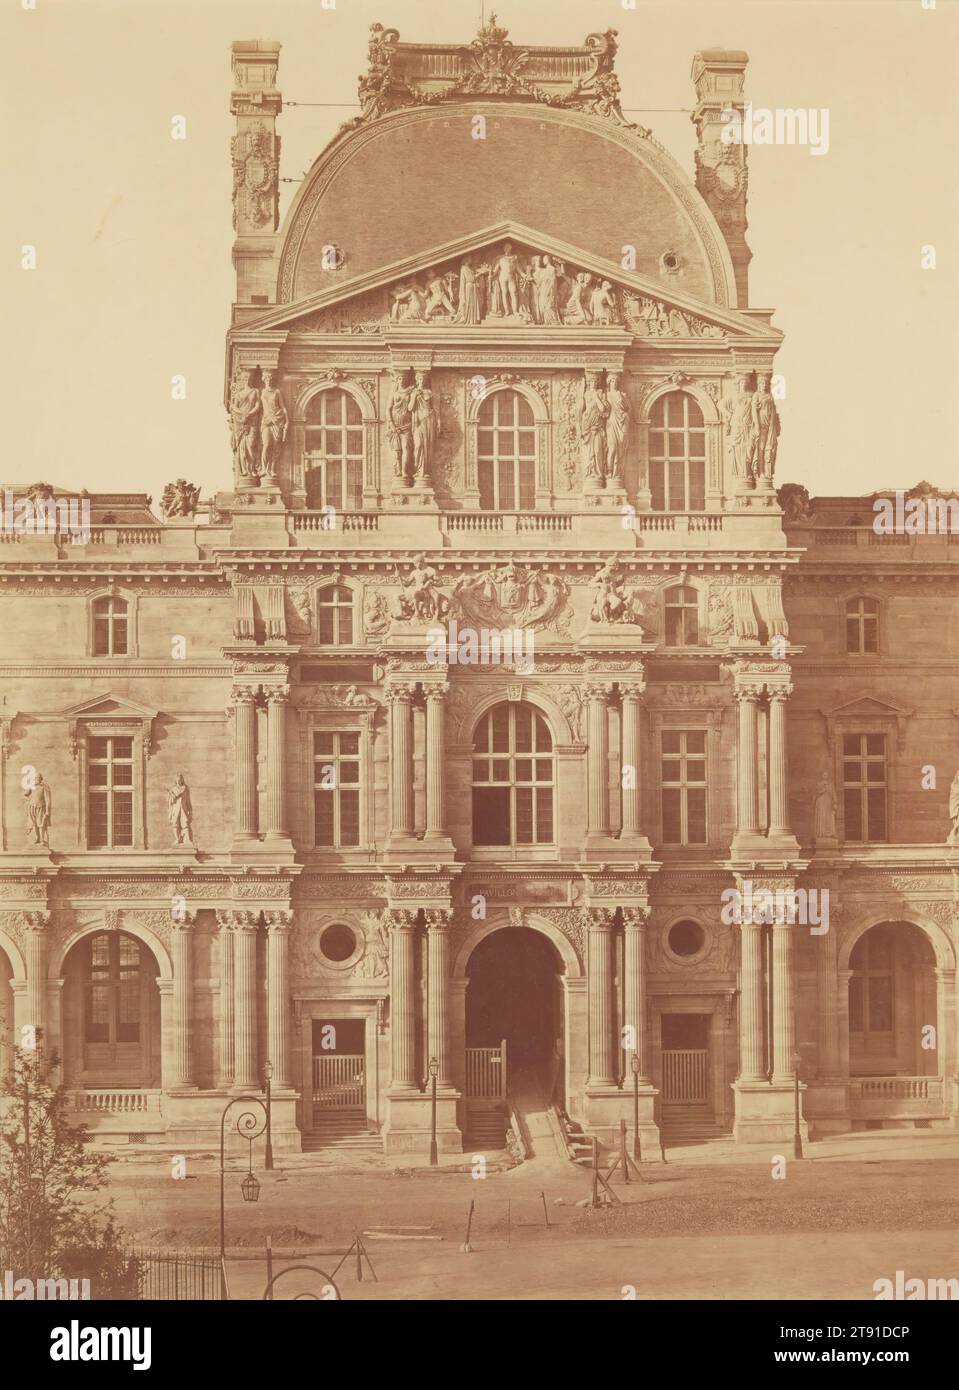 Pavillion Denon, Louvre, Paris, c. 1857, Édouard-Denis Baldus, French, 1813 - 1889, 17 11/16 x 13 1/4 in. (44.93 x 33.66 cm) (image)24 1/2 x 18 9/16 in. (62.23 x 47.15 cm) (mount), Albumen print, France, 19th century Stock Photo